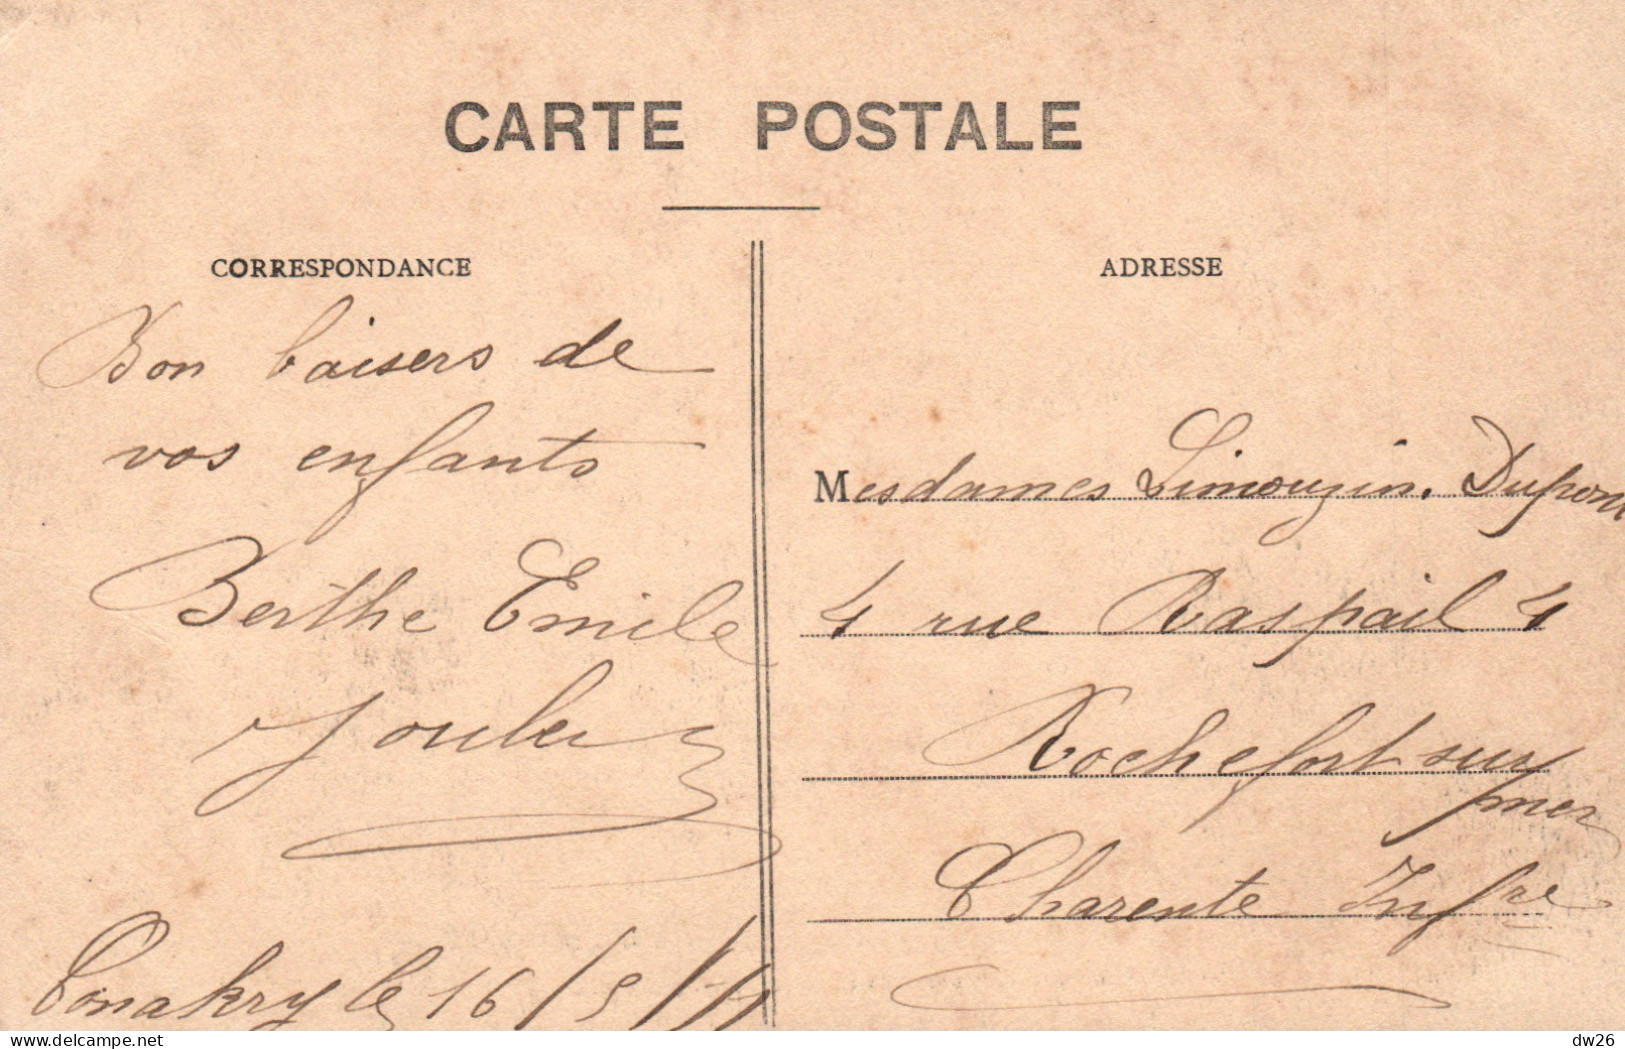 A.O.F. Guinée Française, Conakry: 12e Avenue, Le Chemin De La Gare De Marchandises - Carte P.V. N° 12 - Guinée Française